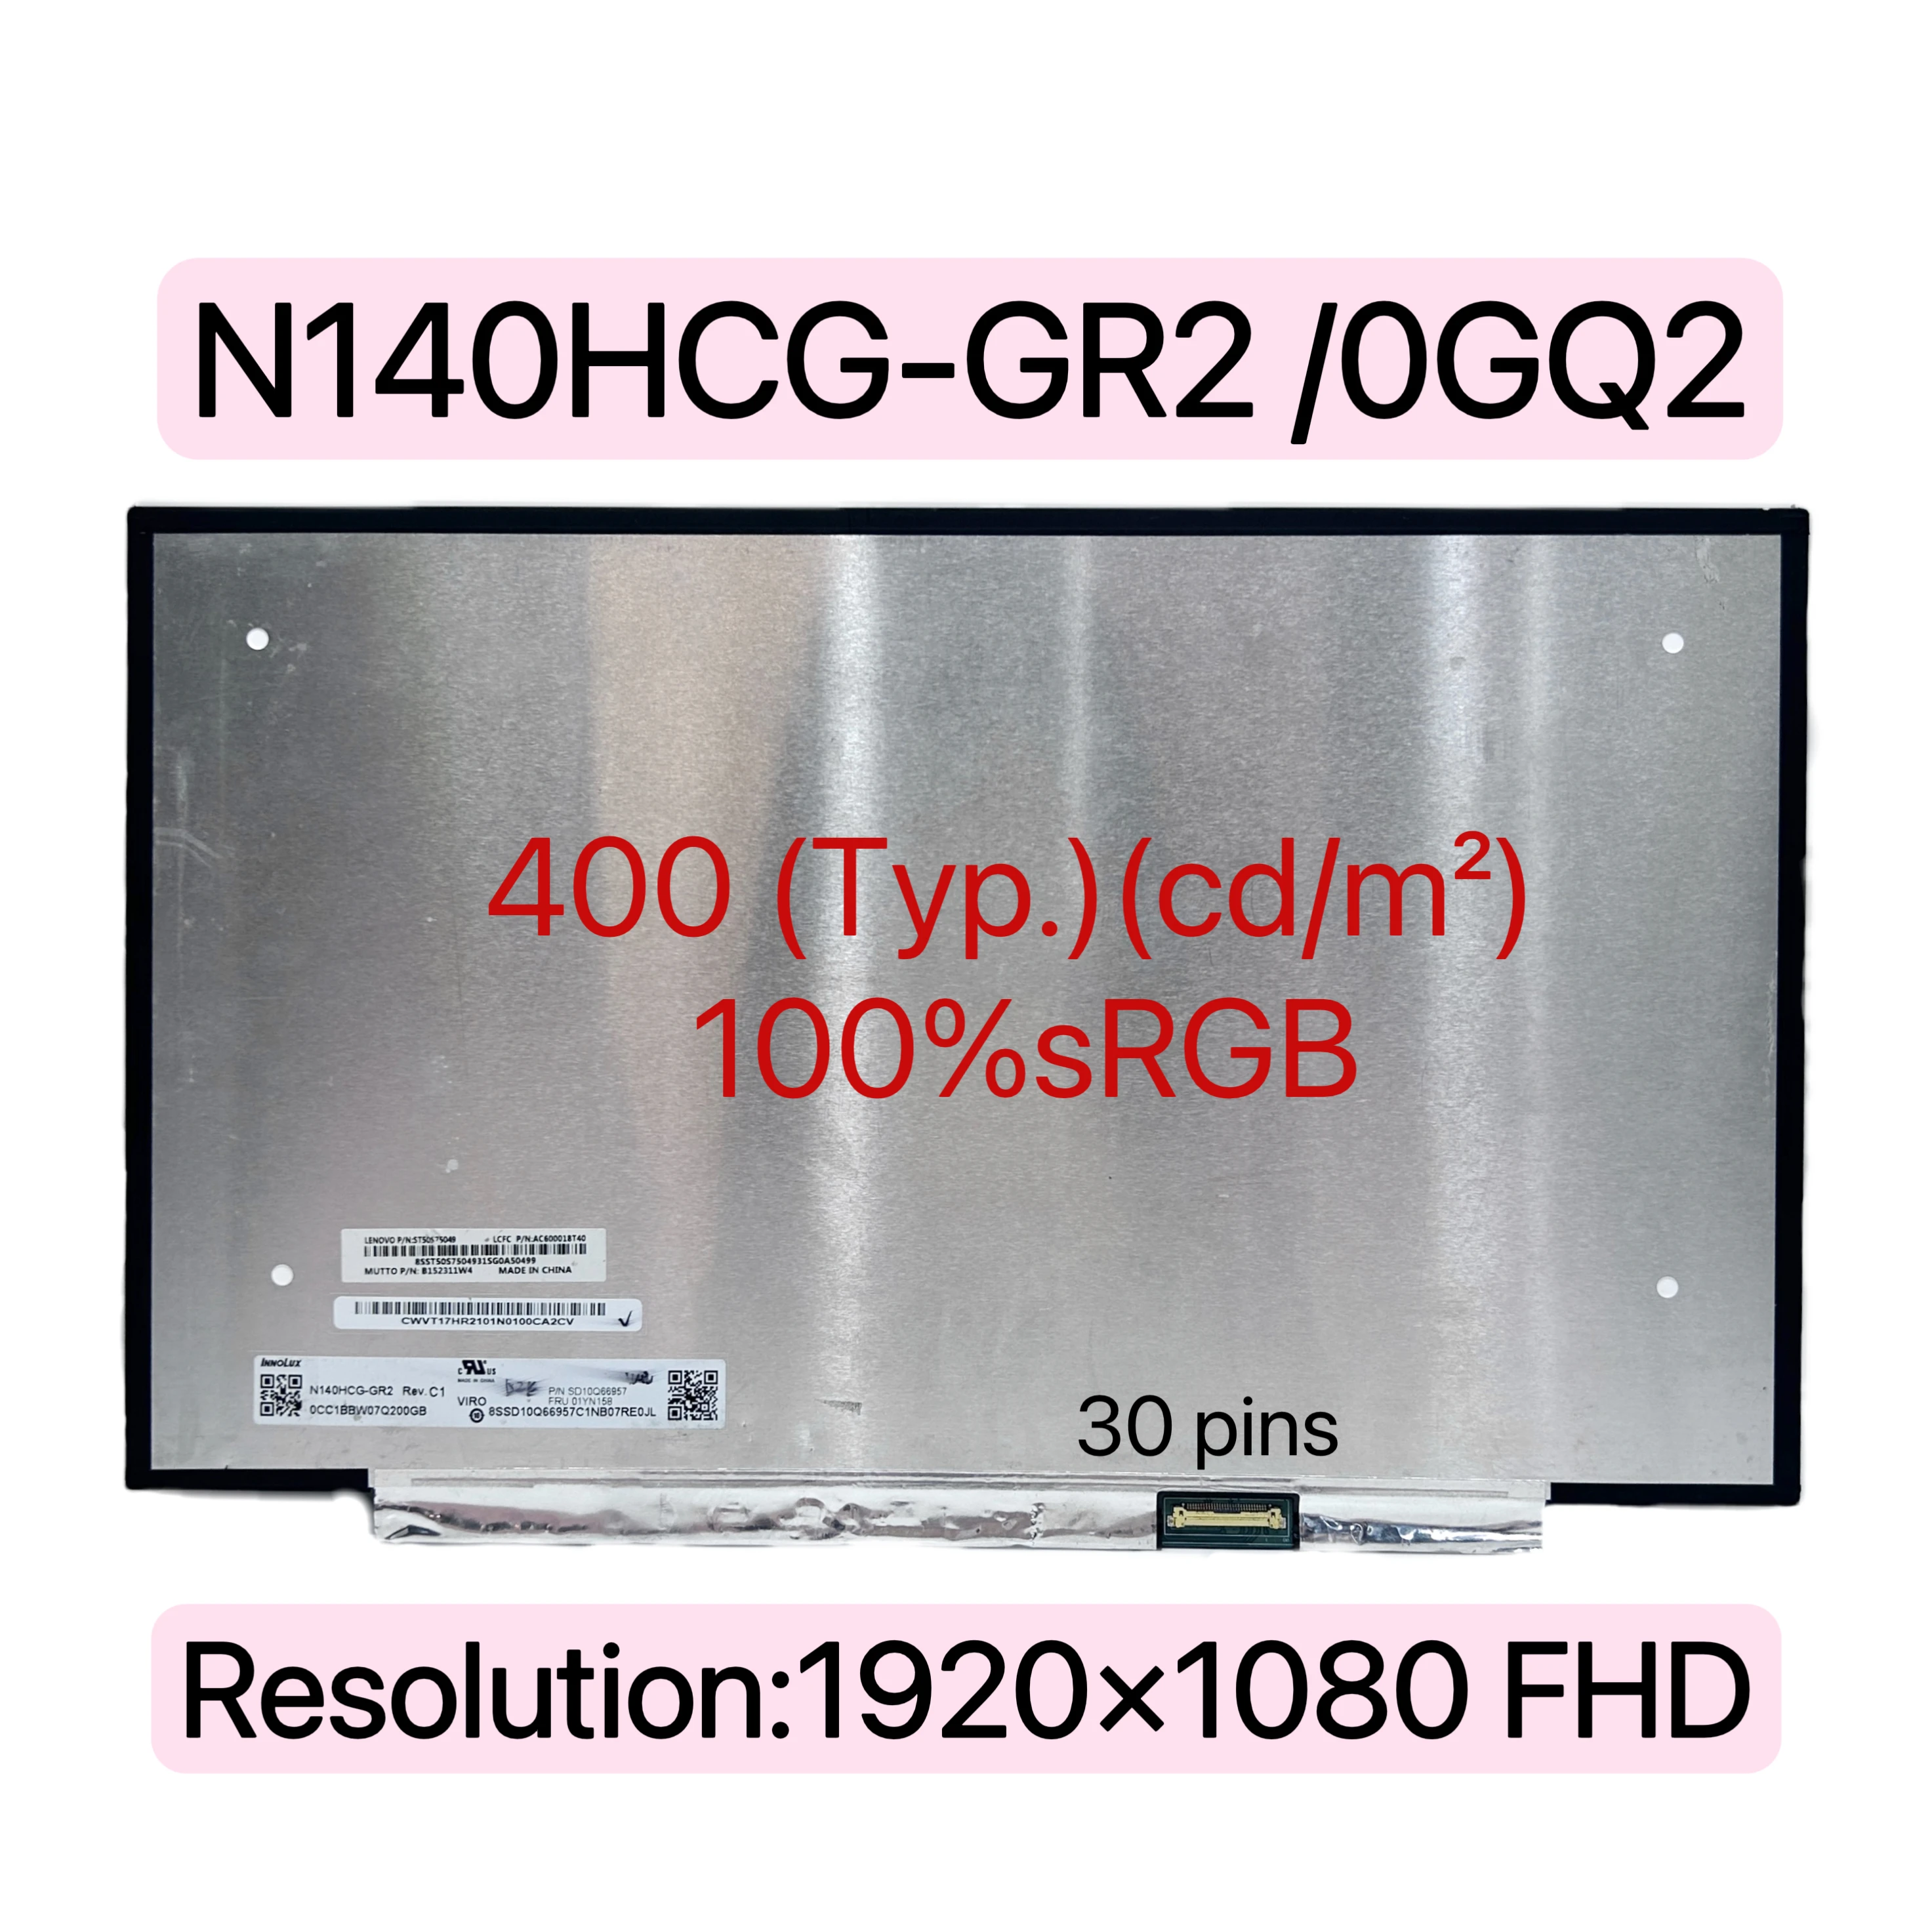 

N140HCG-GR2 N140HCG-GQ2 N140HCR-GQ2 ЖК-экран ноутбука, сменный дисплей, матрица 1920 × 1080 FHD 100% sRGB 400 cd/м² eDP 30 pins